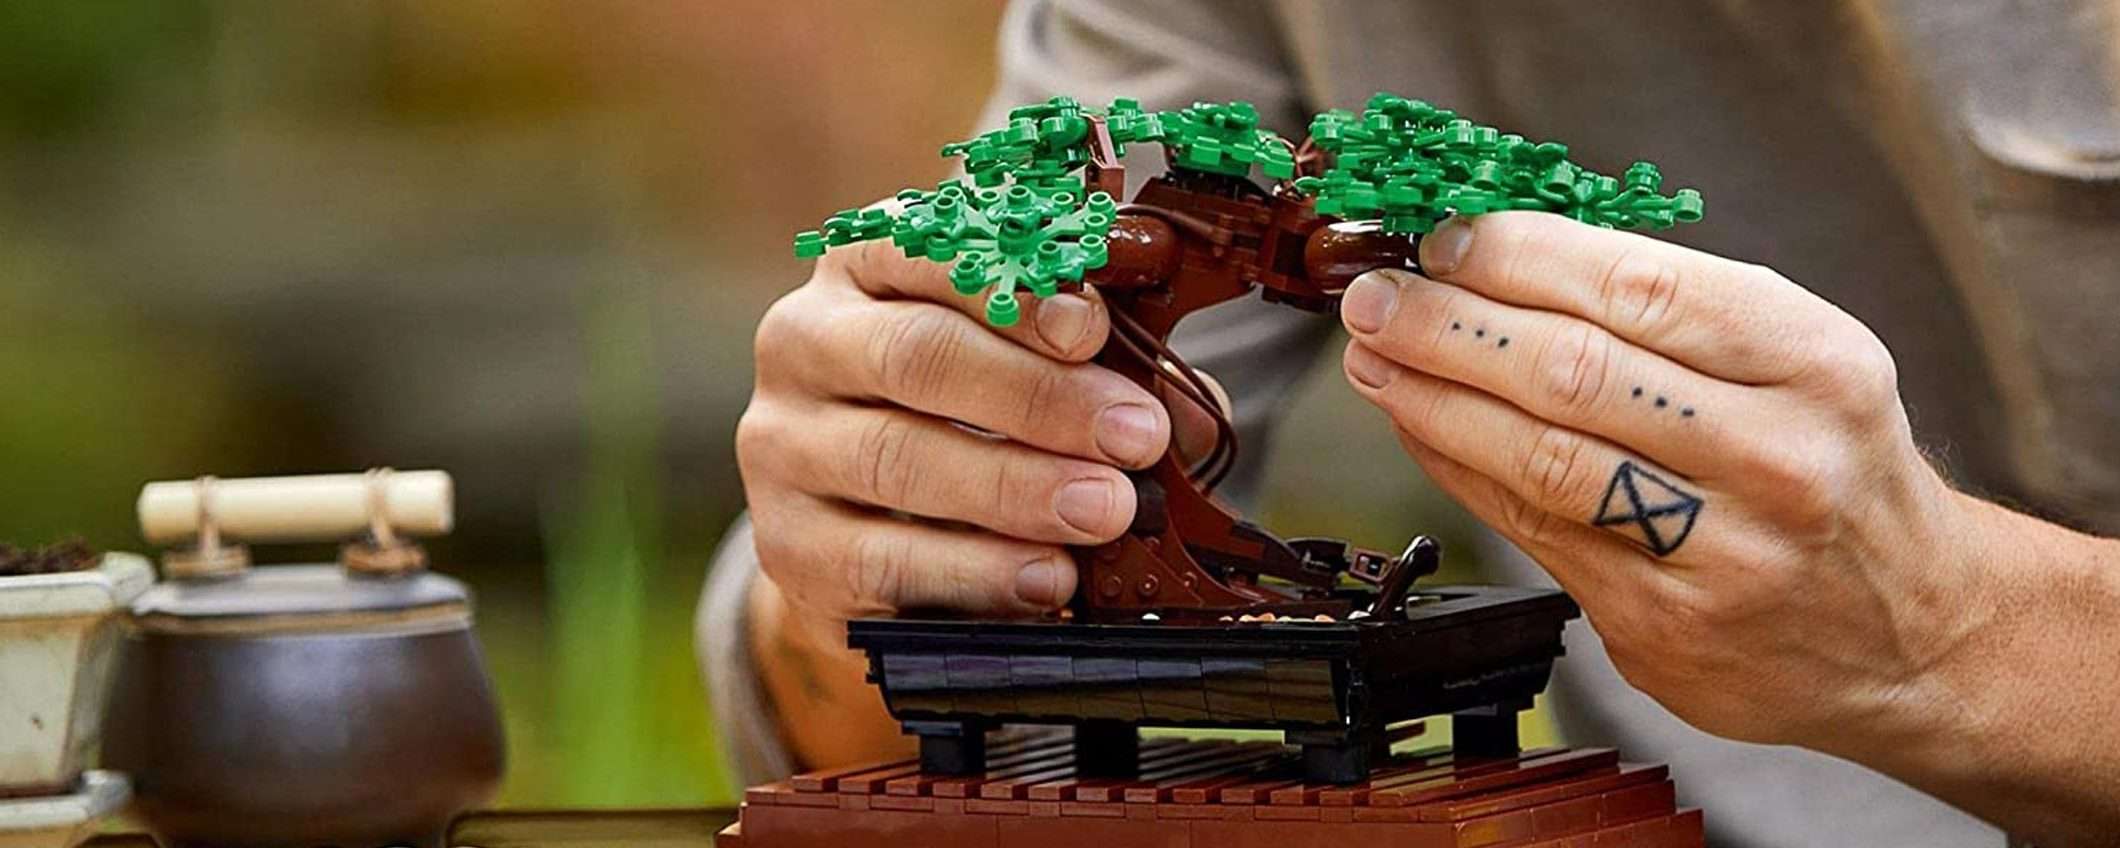 Offerta zen su Amazon: Albero Bonsai LEGO in sconto